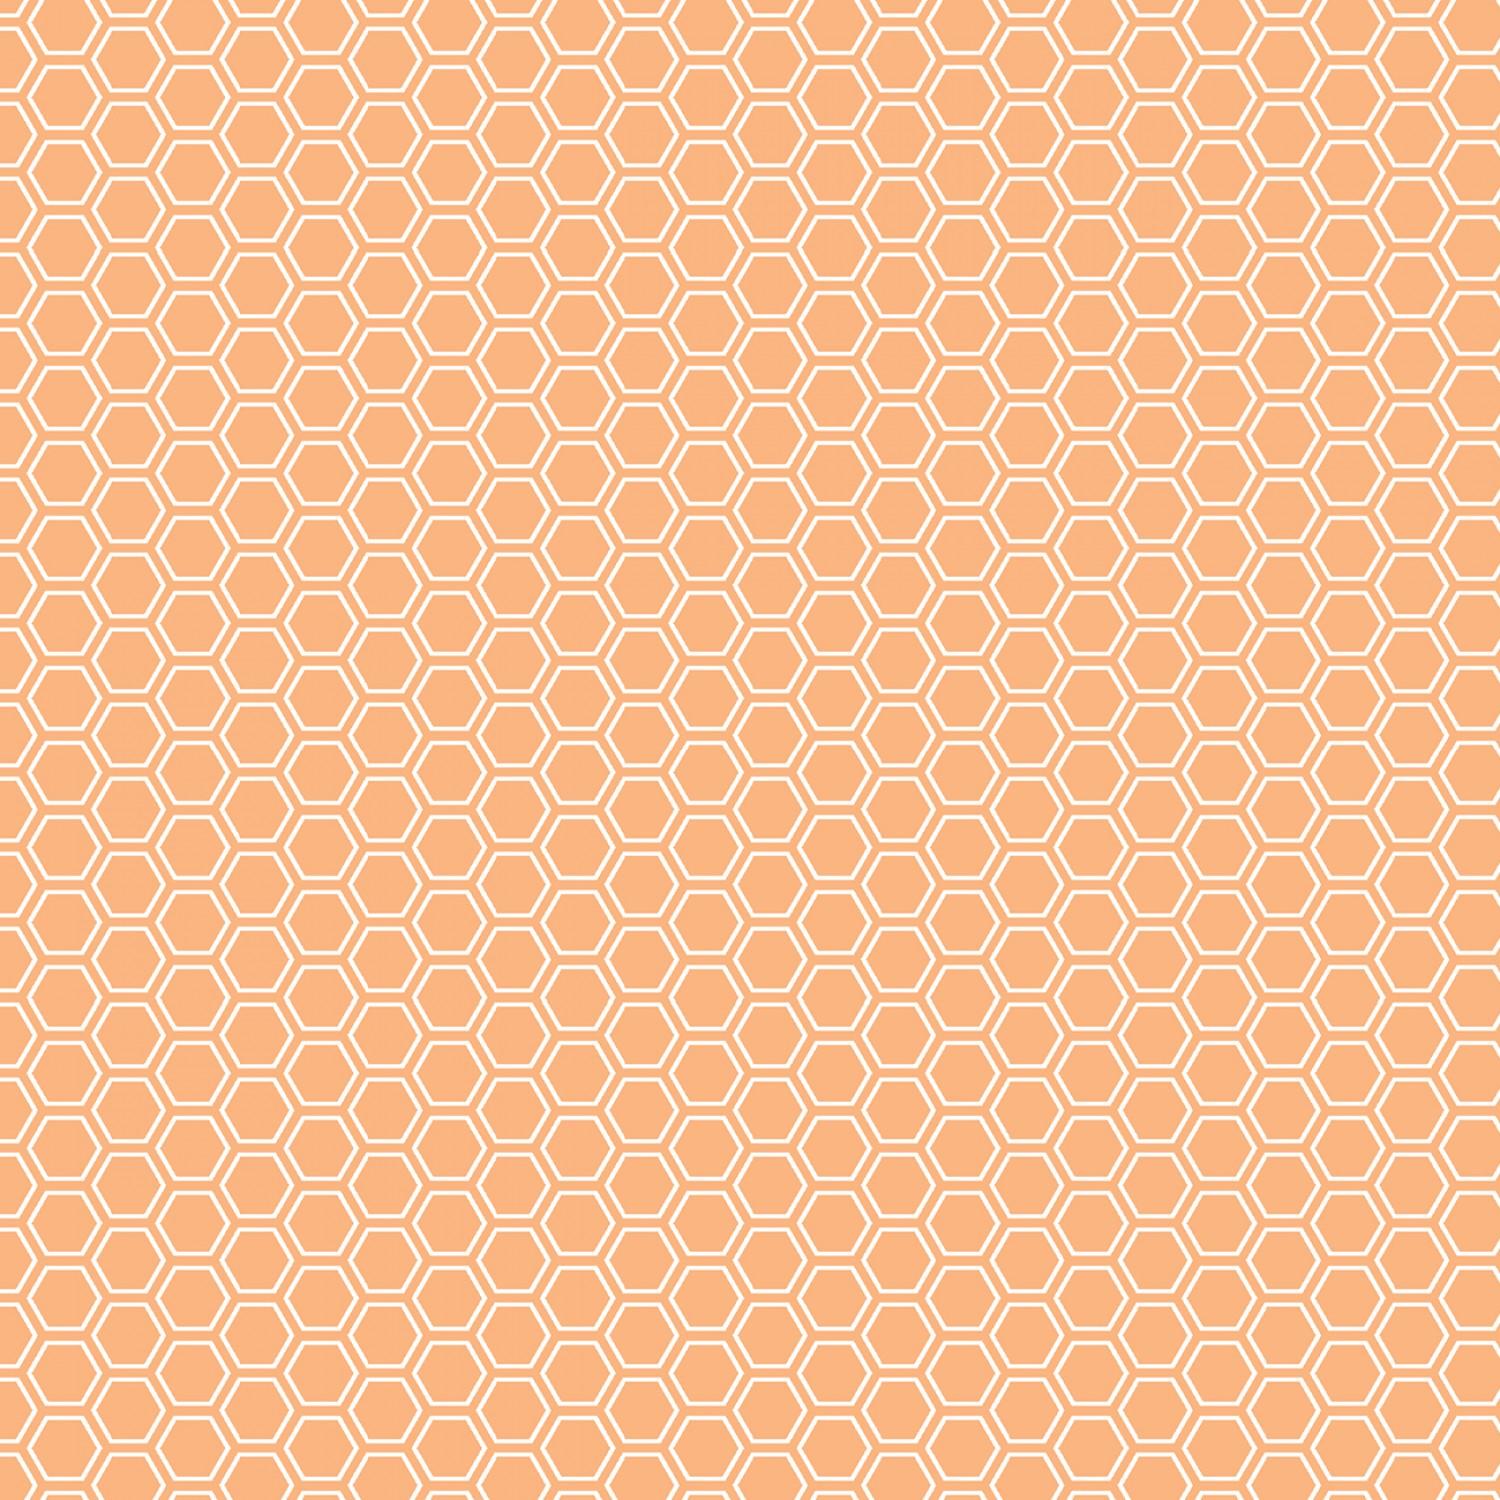 Kimberbell Basic - Orange - Honeycomb - 8256-O